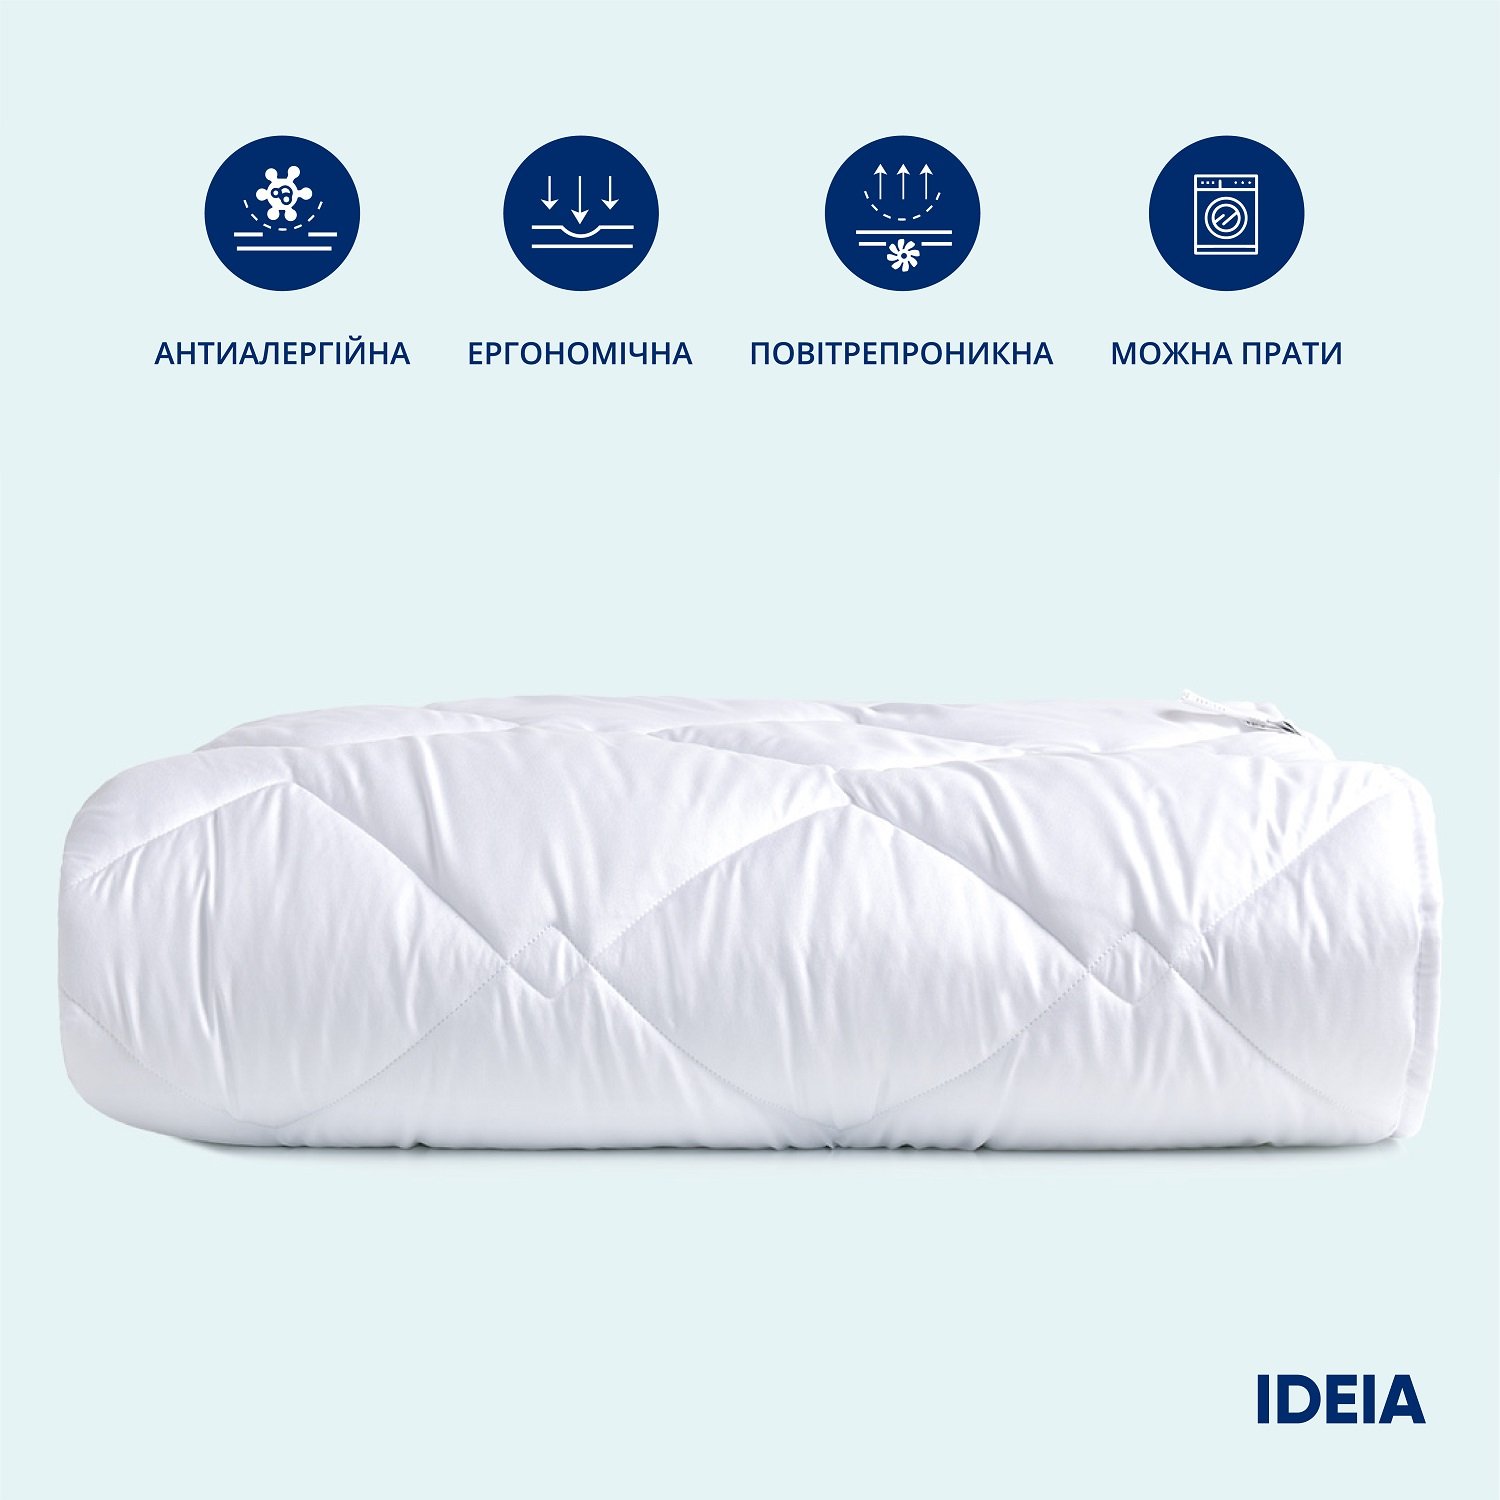 Одеяло Ideia Classic, евростандарт, 220х200 см, белый (8-31156 білий) - фото 2